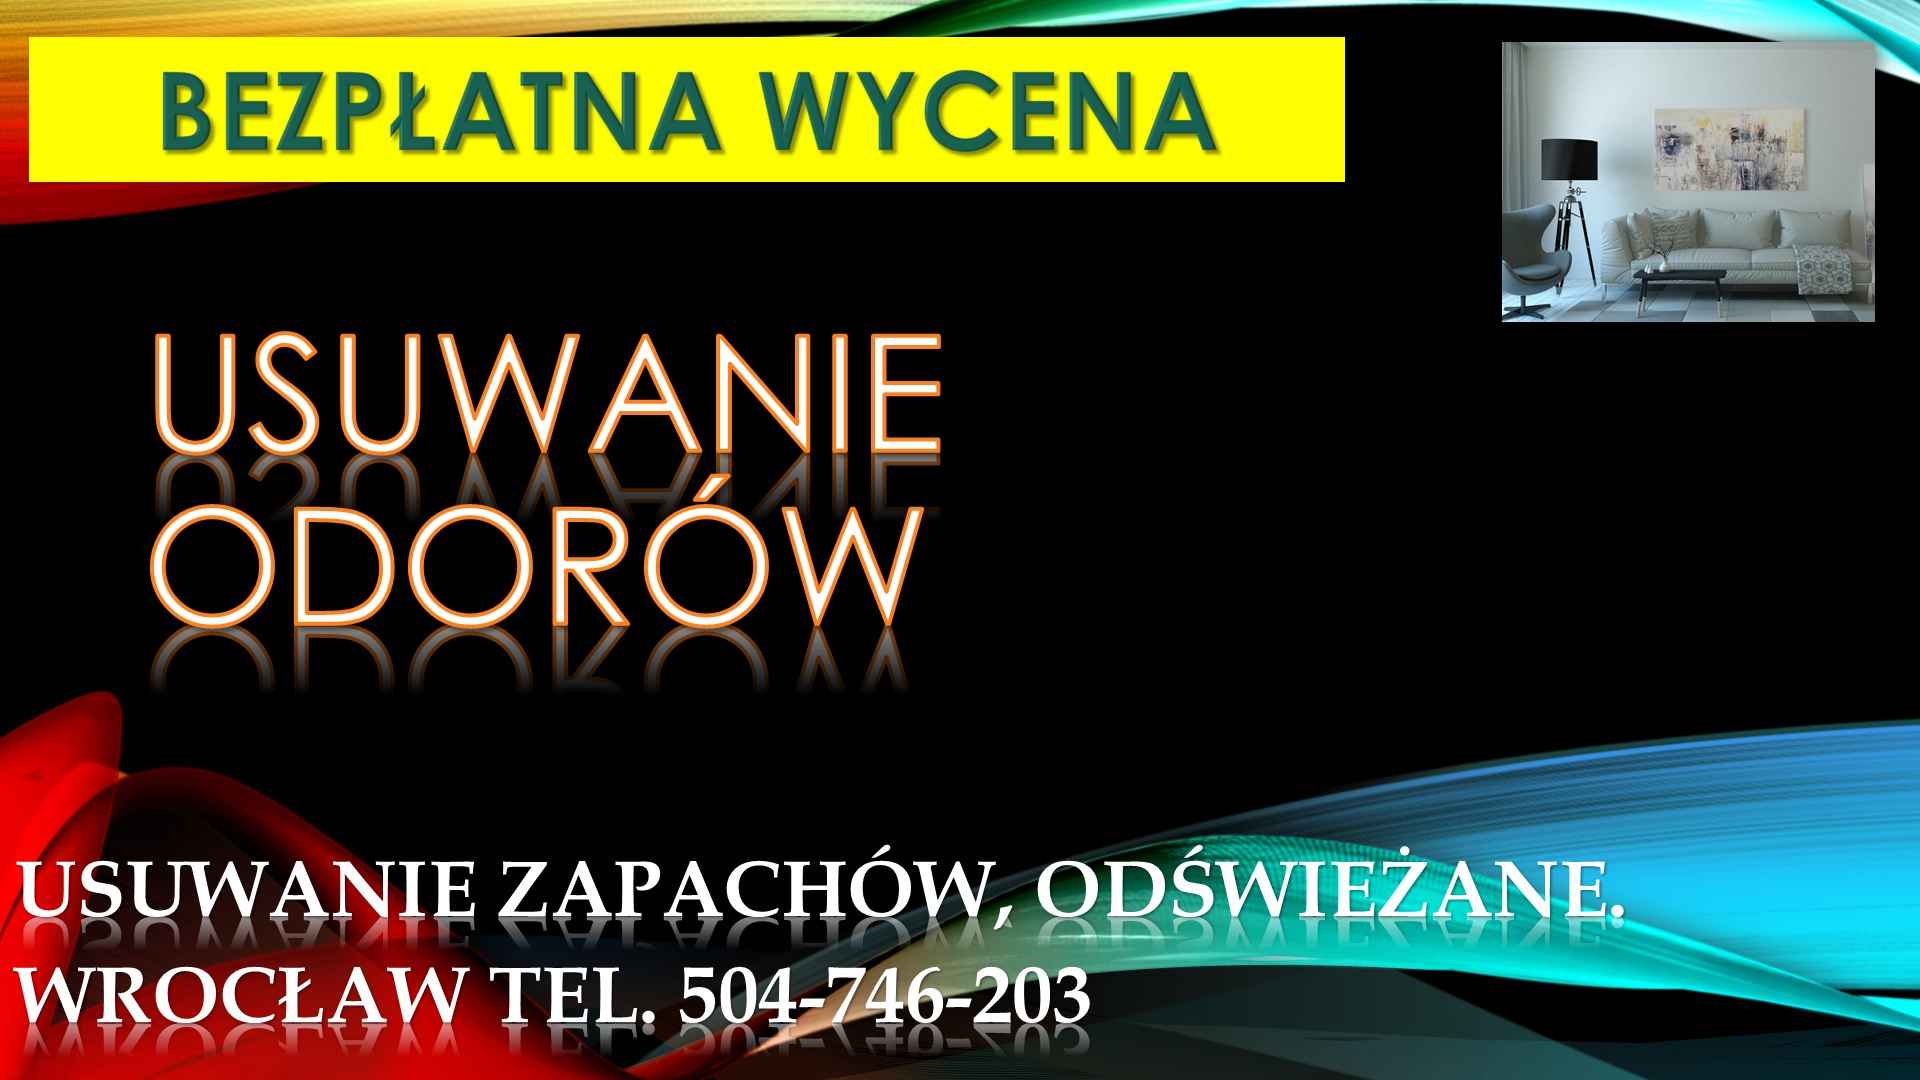 Ozonowanie mieszkań, Wrocław, t. 504-746-203. usunięcie zapachu, cena Psie Pole - zdjęcie 2